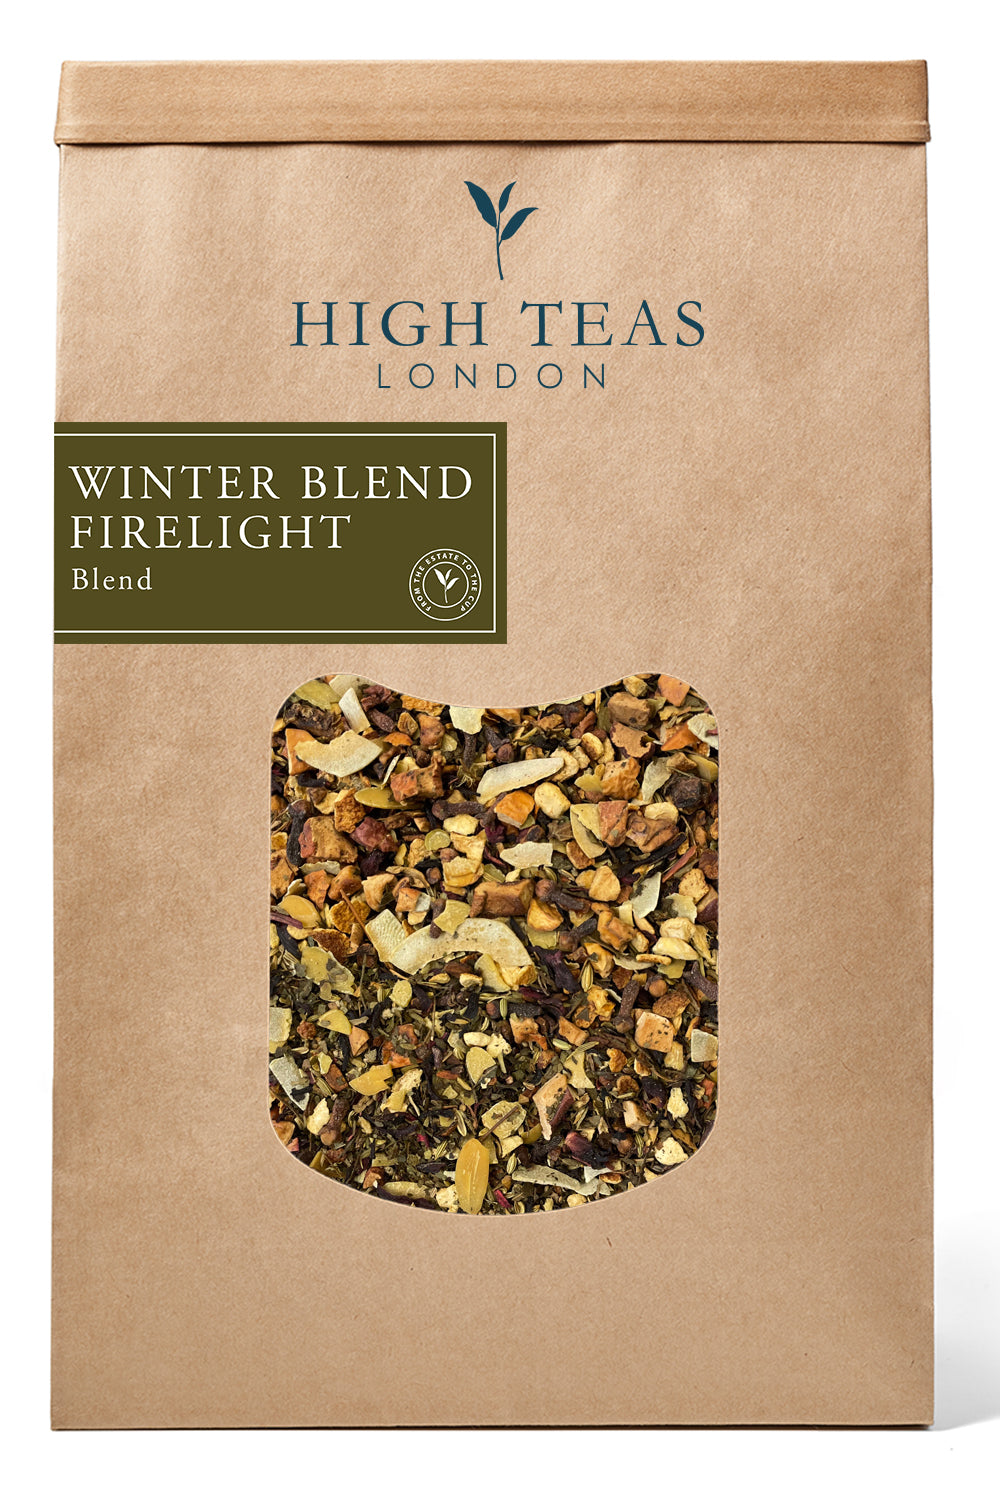 Winter Blend Firelight-500g-Loose Leaf Tea-High Teas